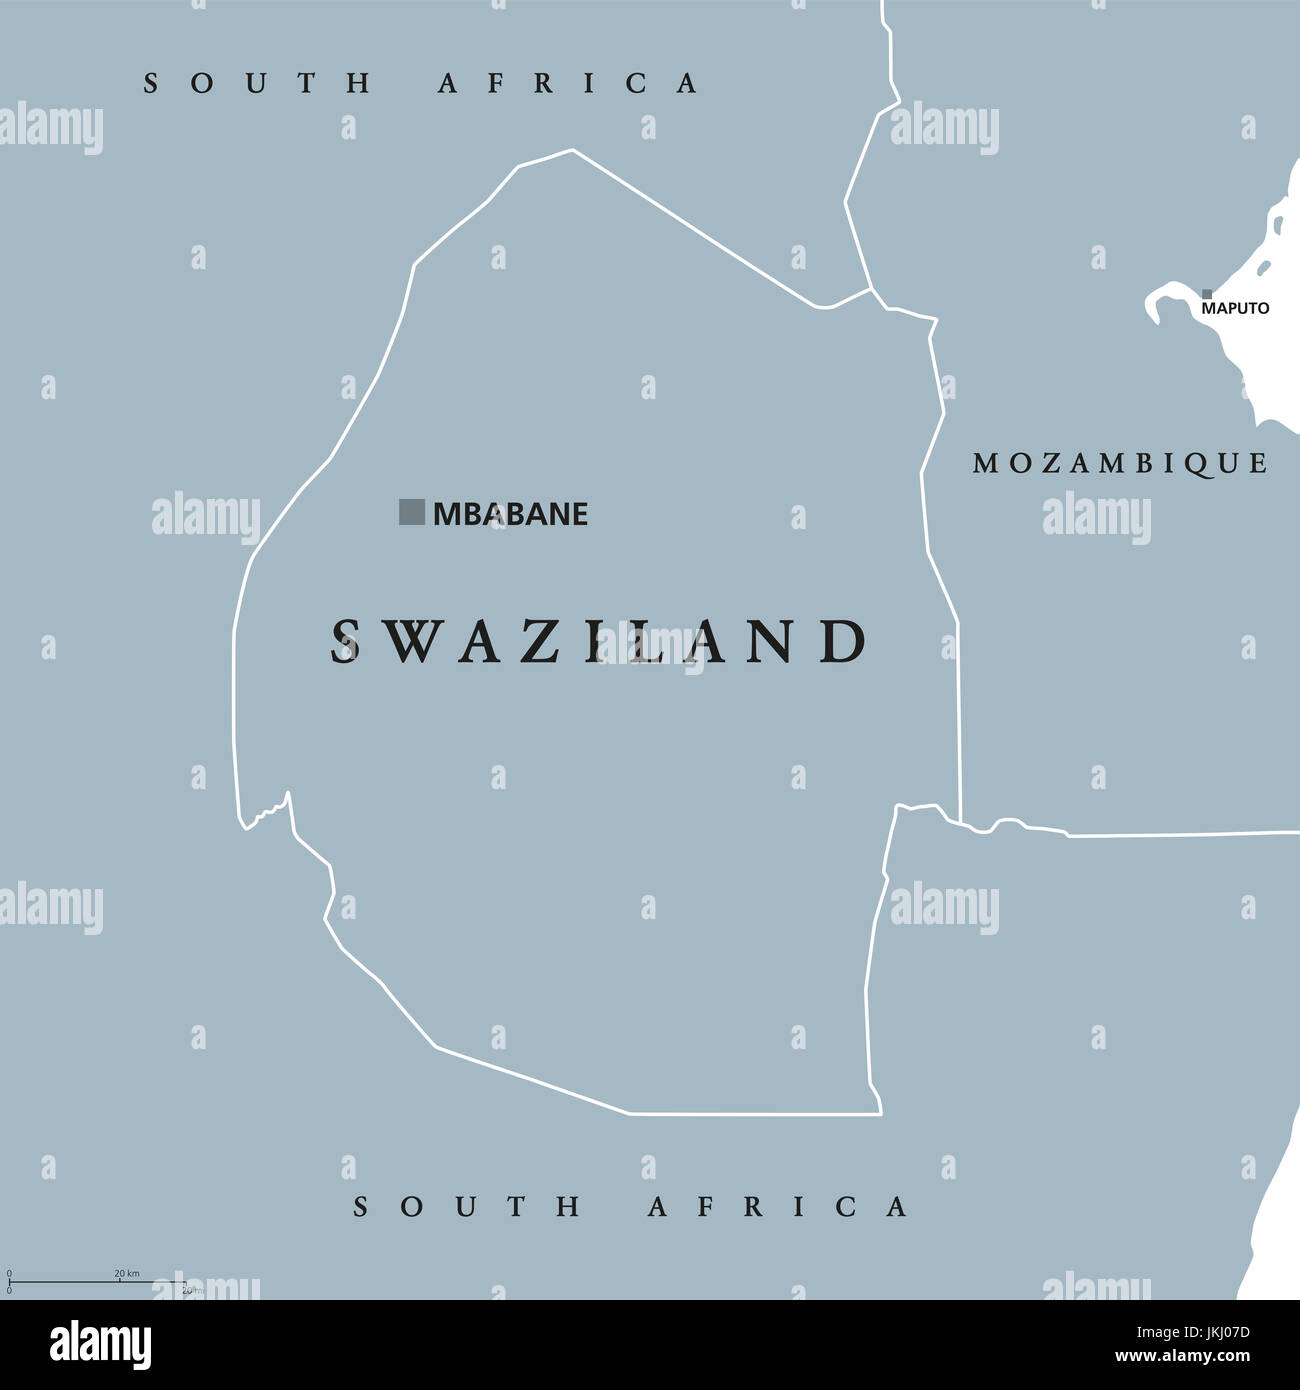 Carte politique du Swaziland Mbabane avec capital. Royaume d'Eswatini Kangwane, parfois appelé. État souverain et pays sans littoral en Afrique du Sud. Banque D'Images